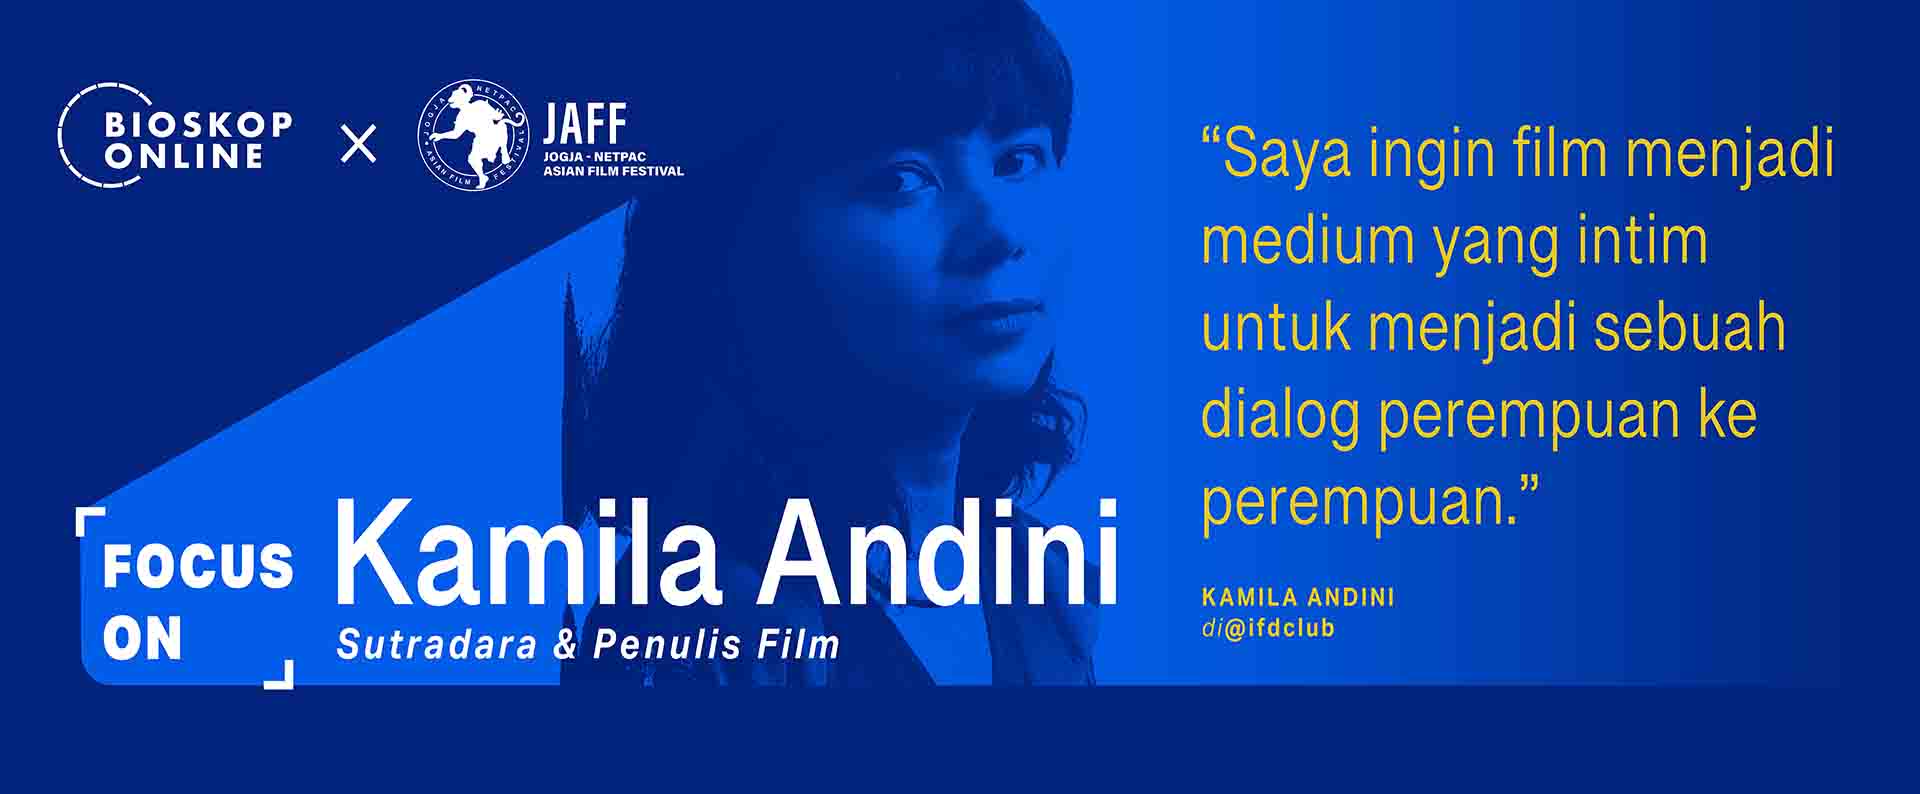 Fokus On Kamila Andini